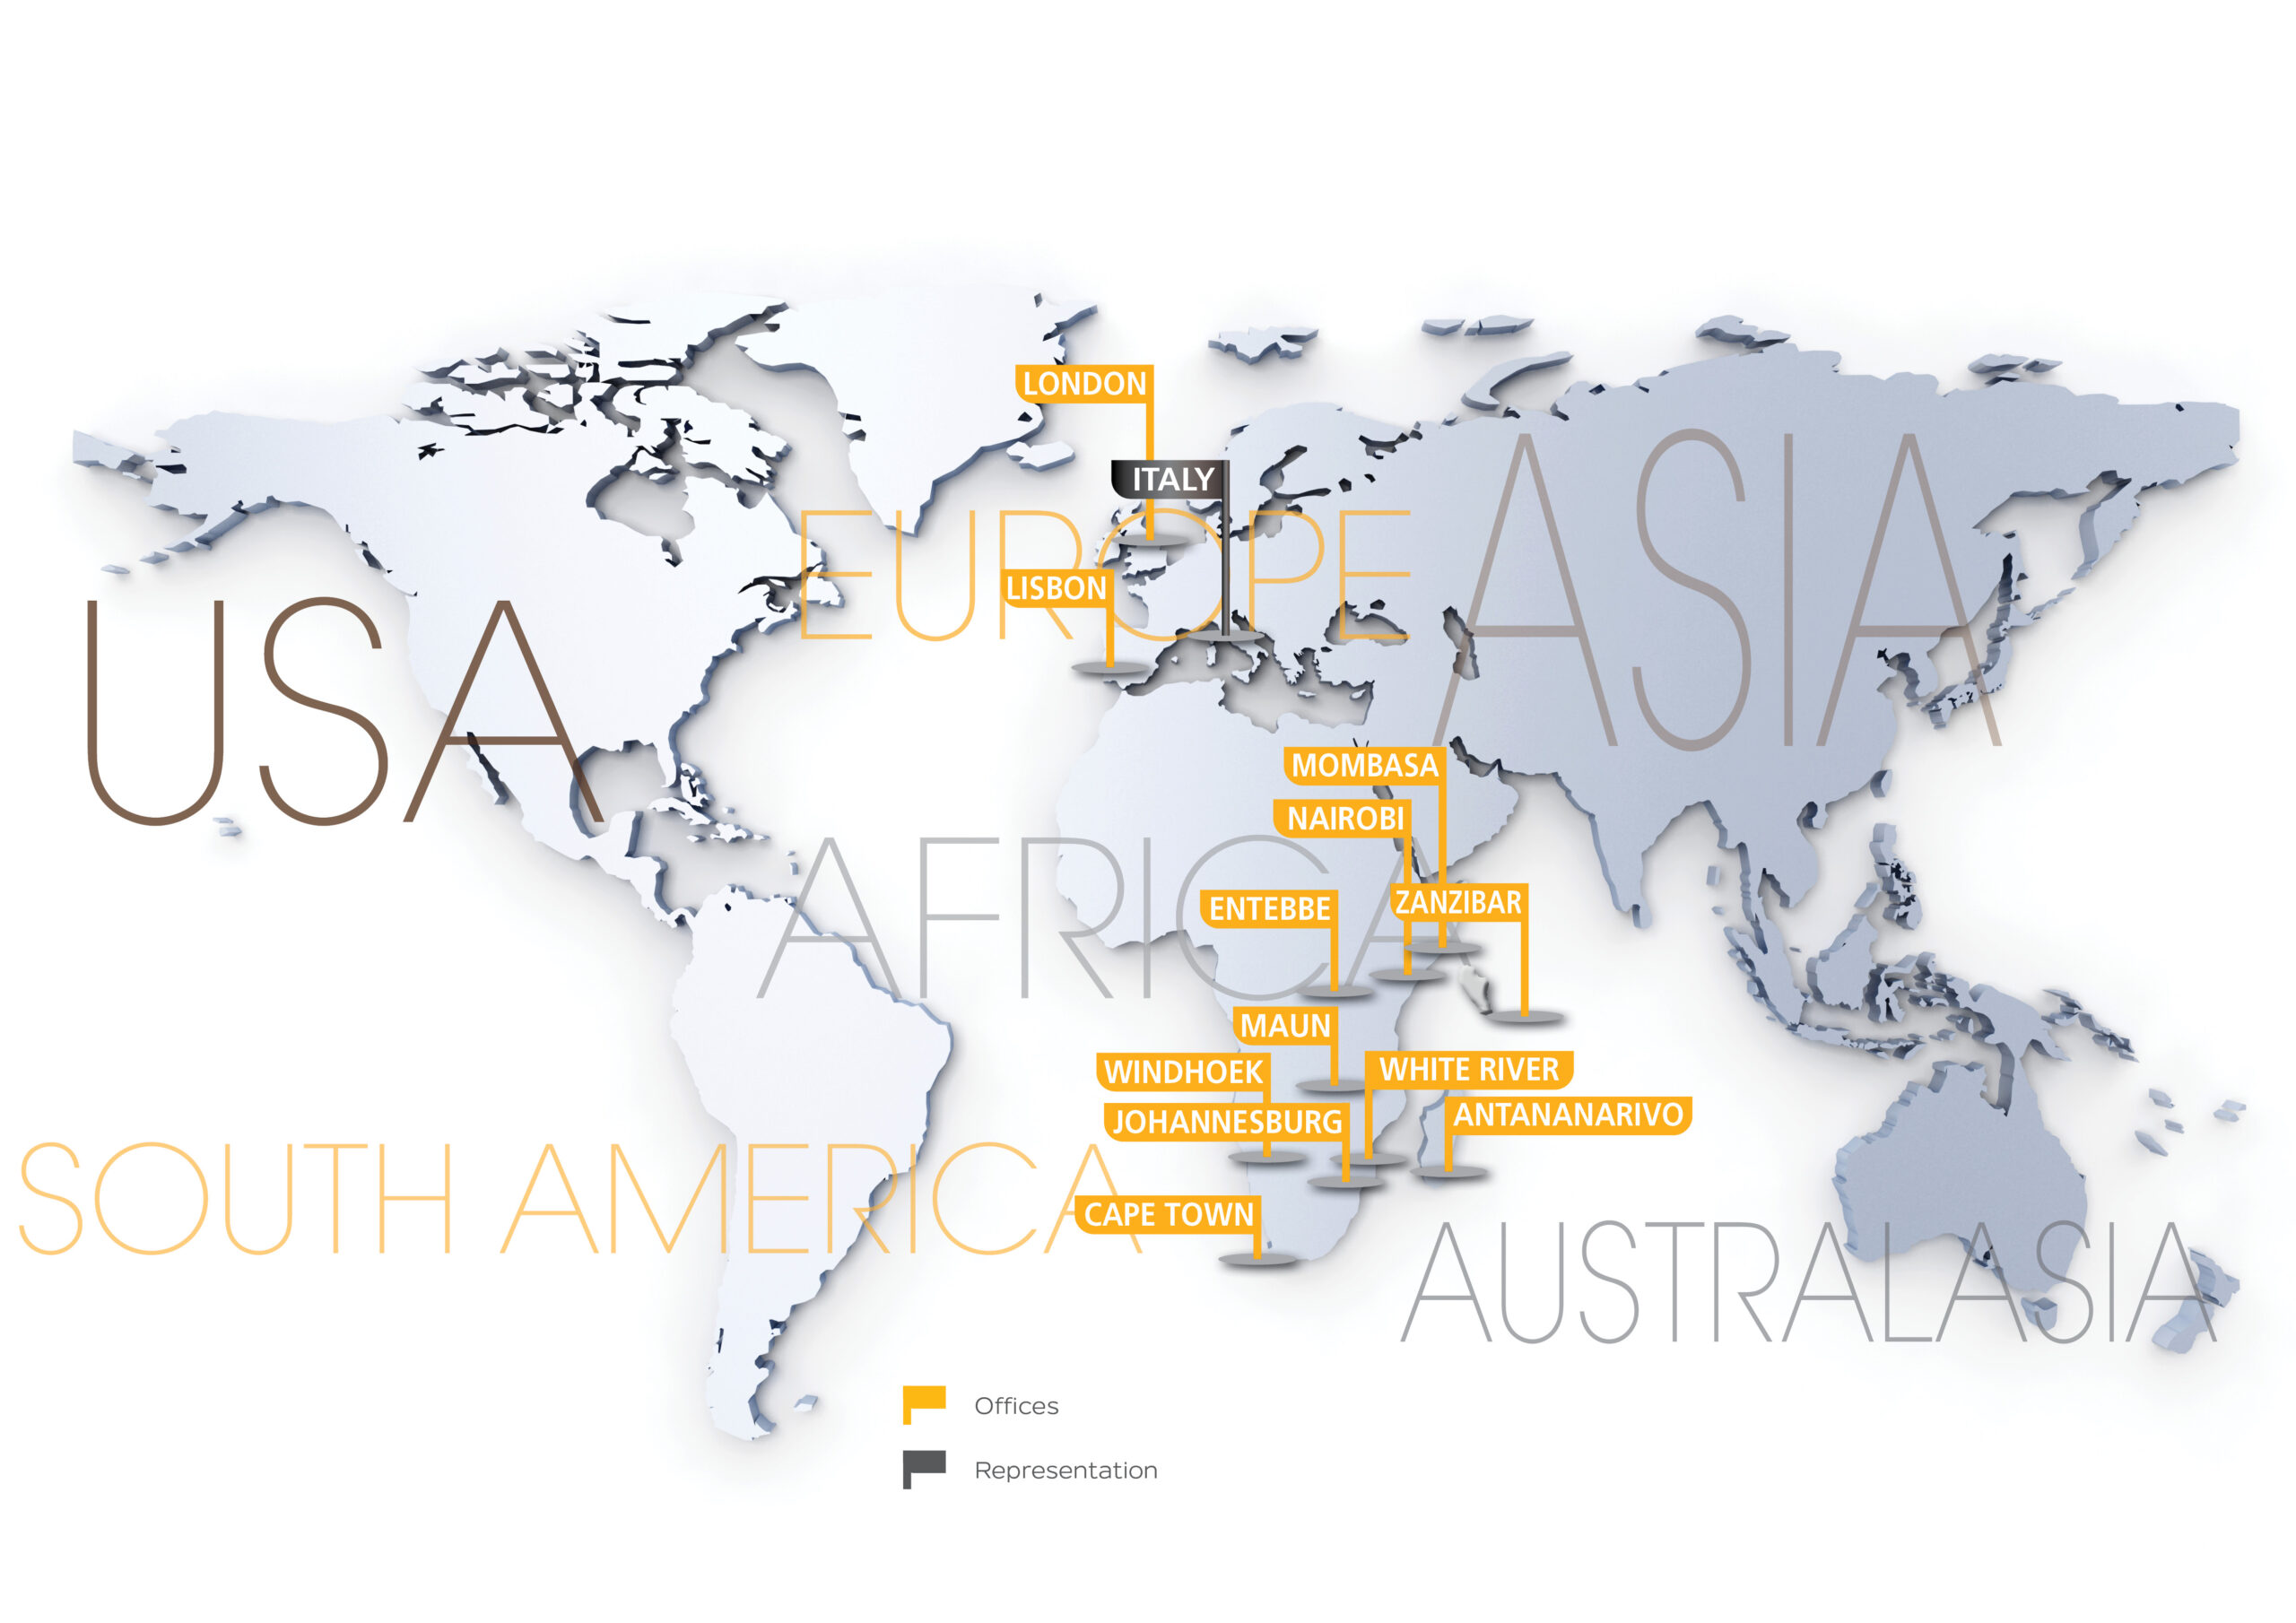 Tourvest Destination Management Global Footprint Map